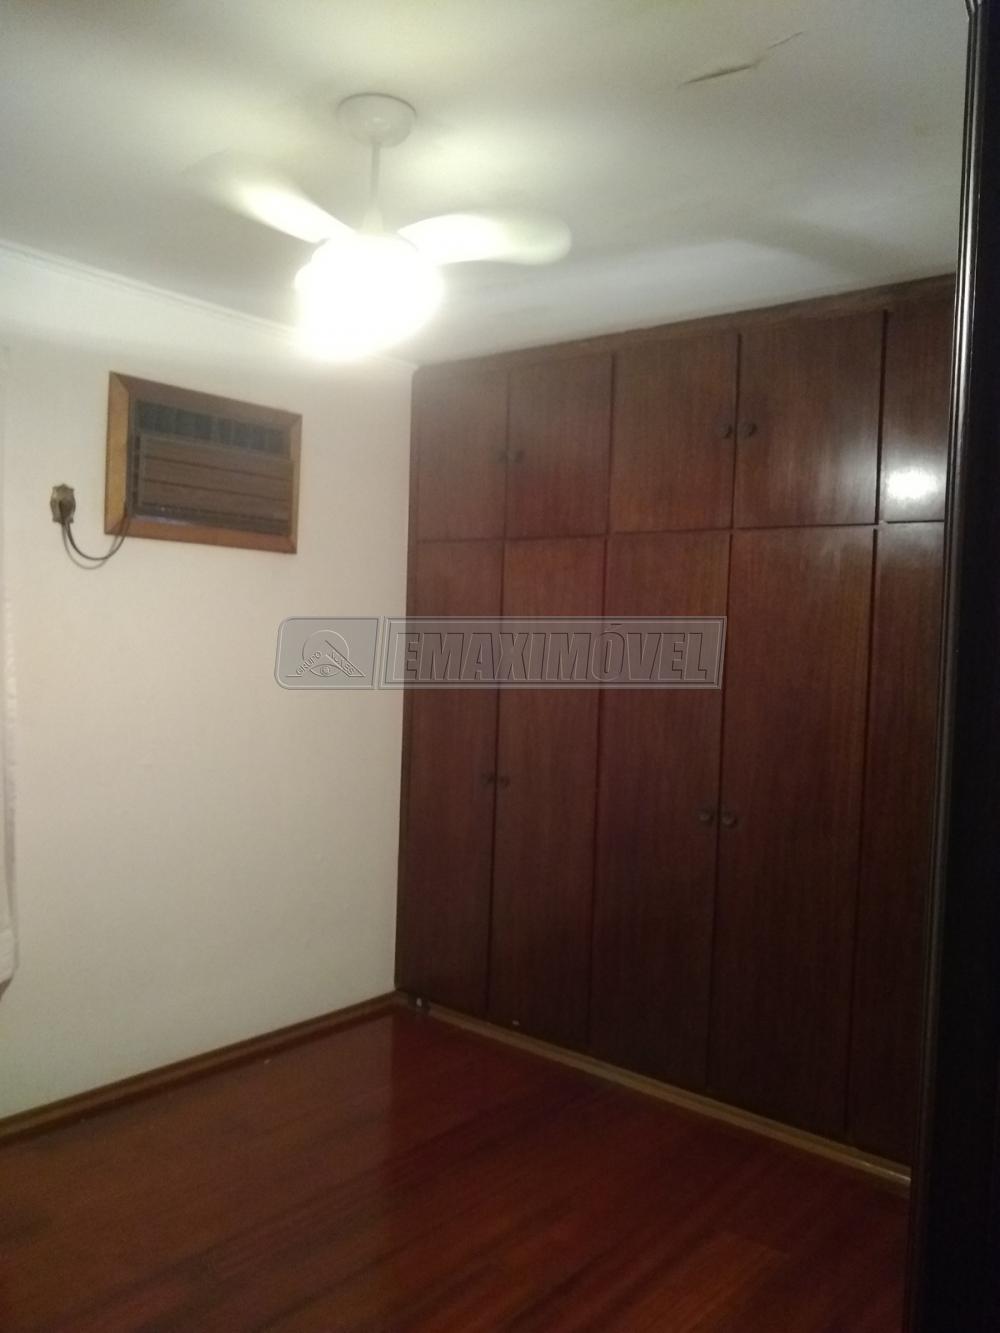 Comprar Casa / em Bairros em Sorocaba R$ 950.000,00 - Foto 17